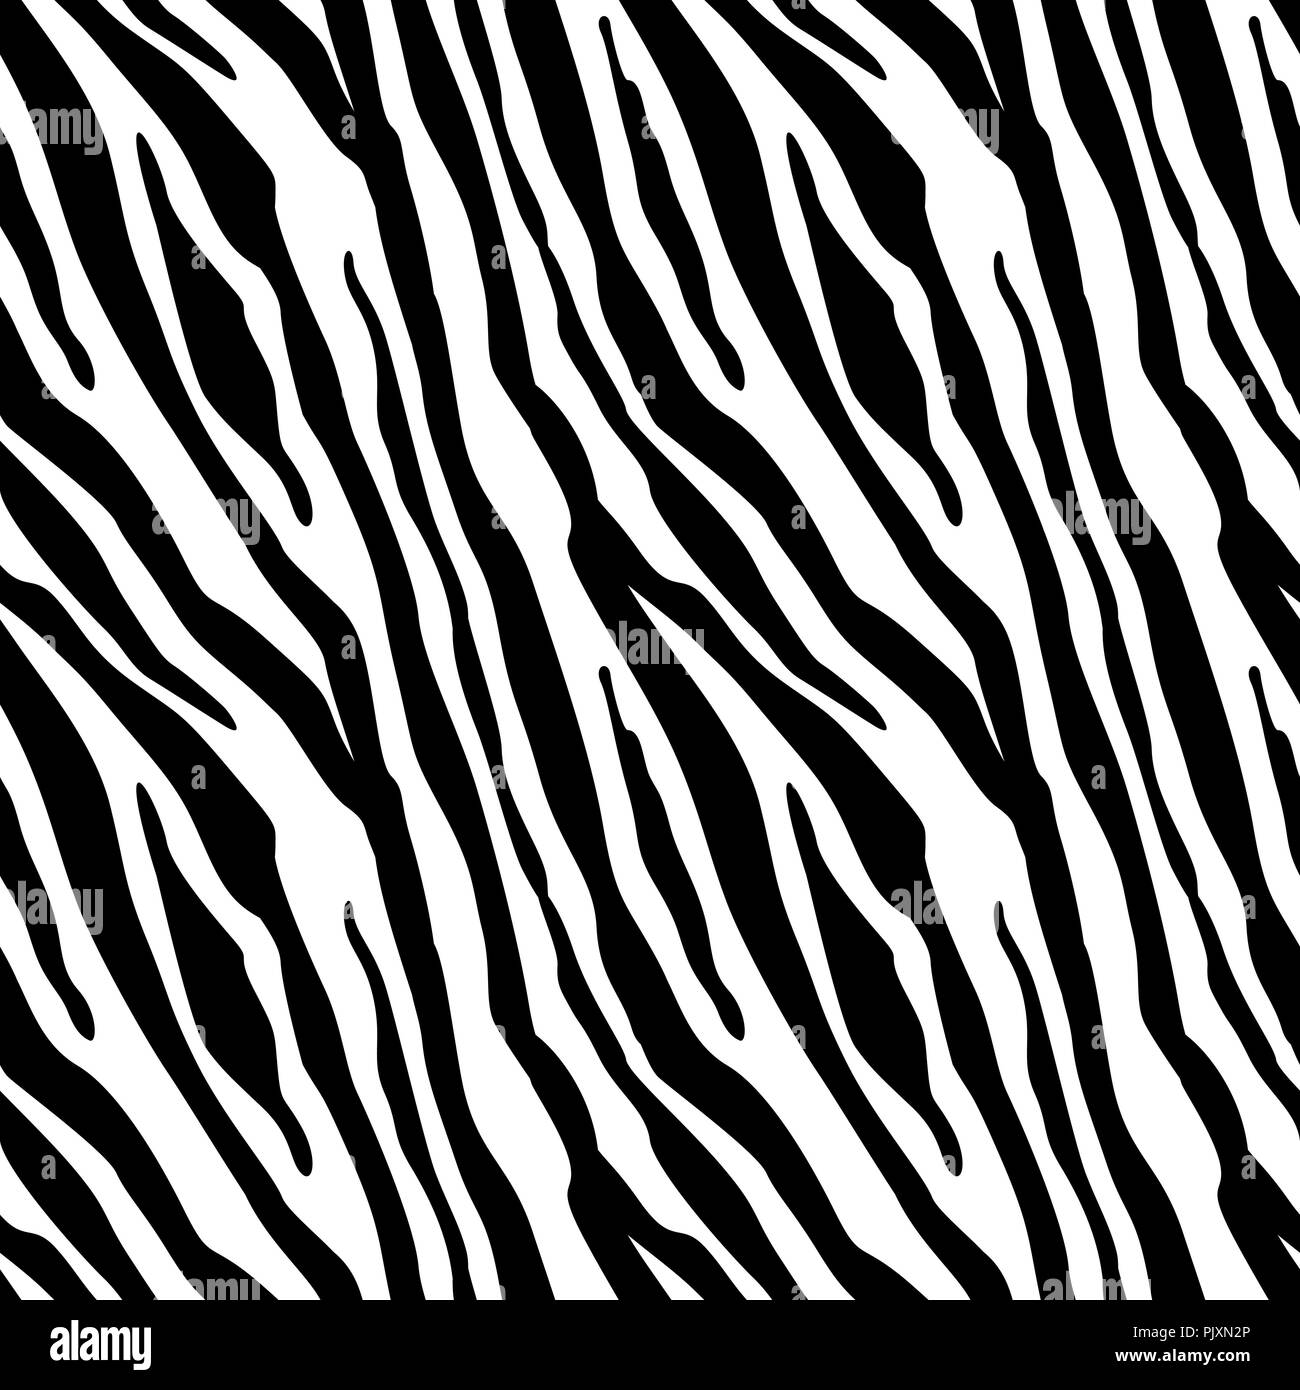 Black And White Zebra Print